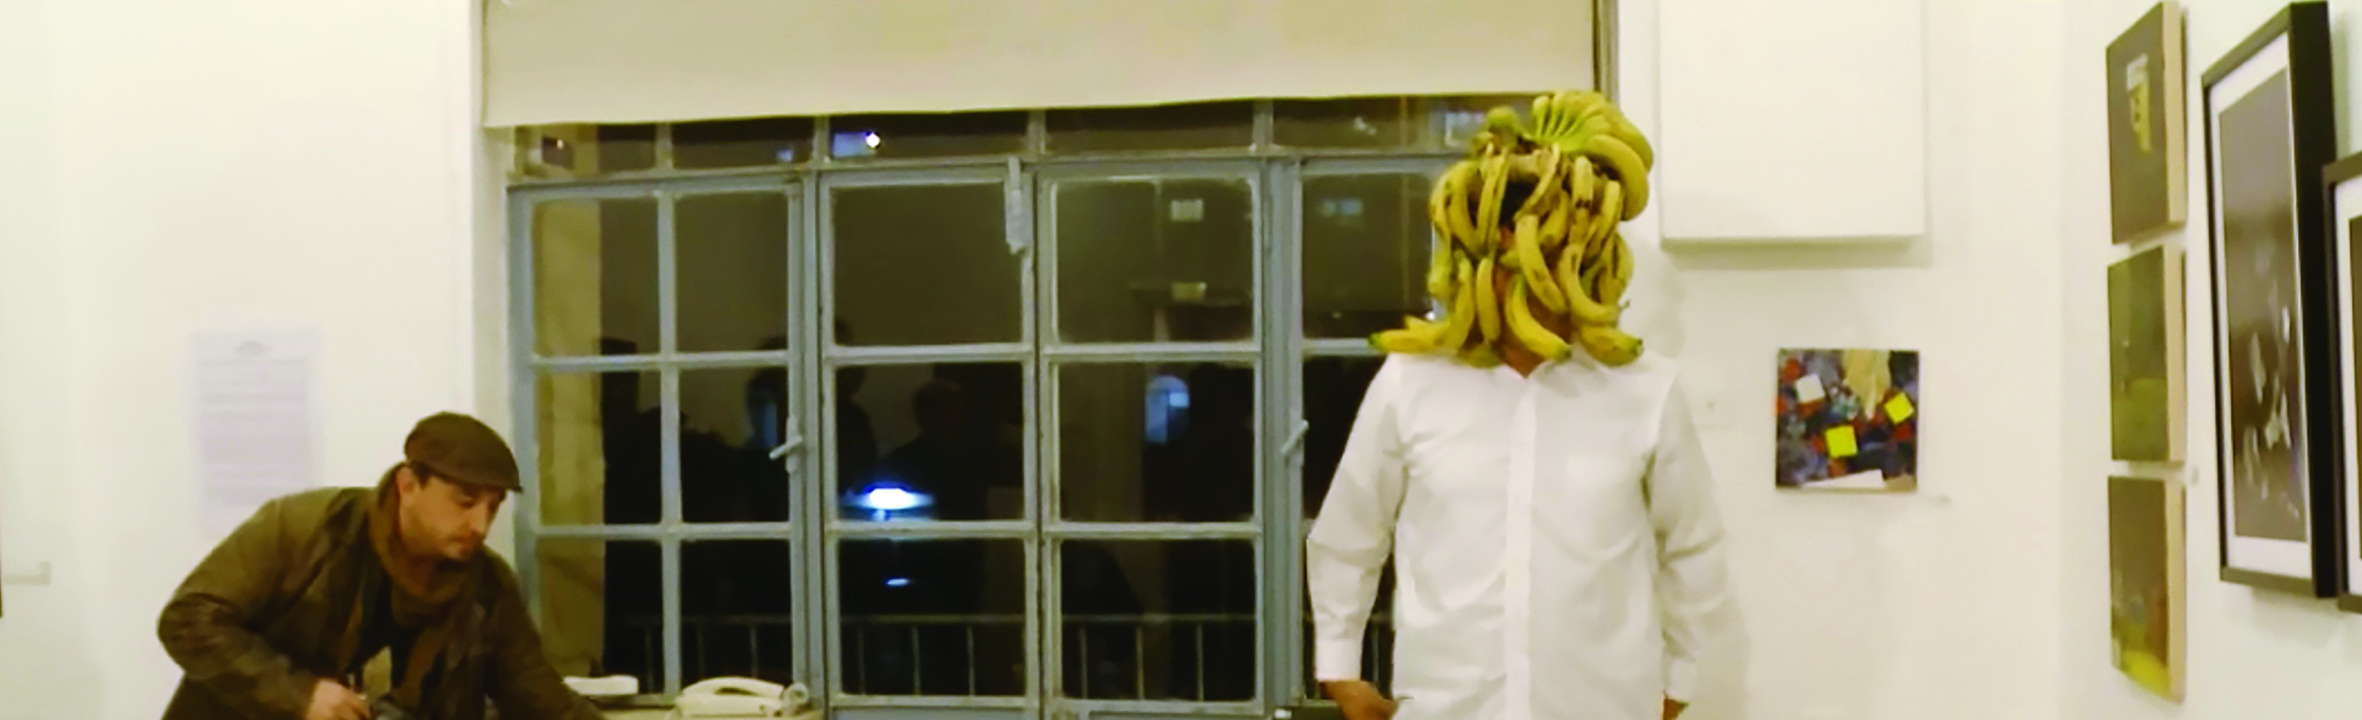 video_bananot